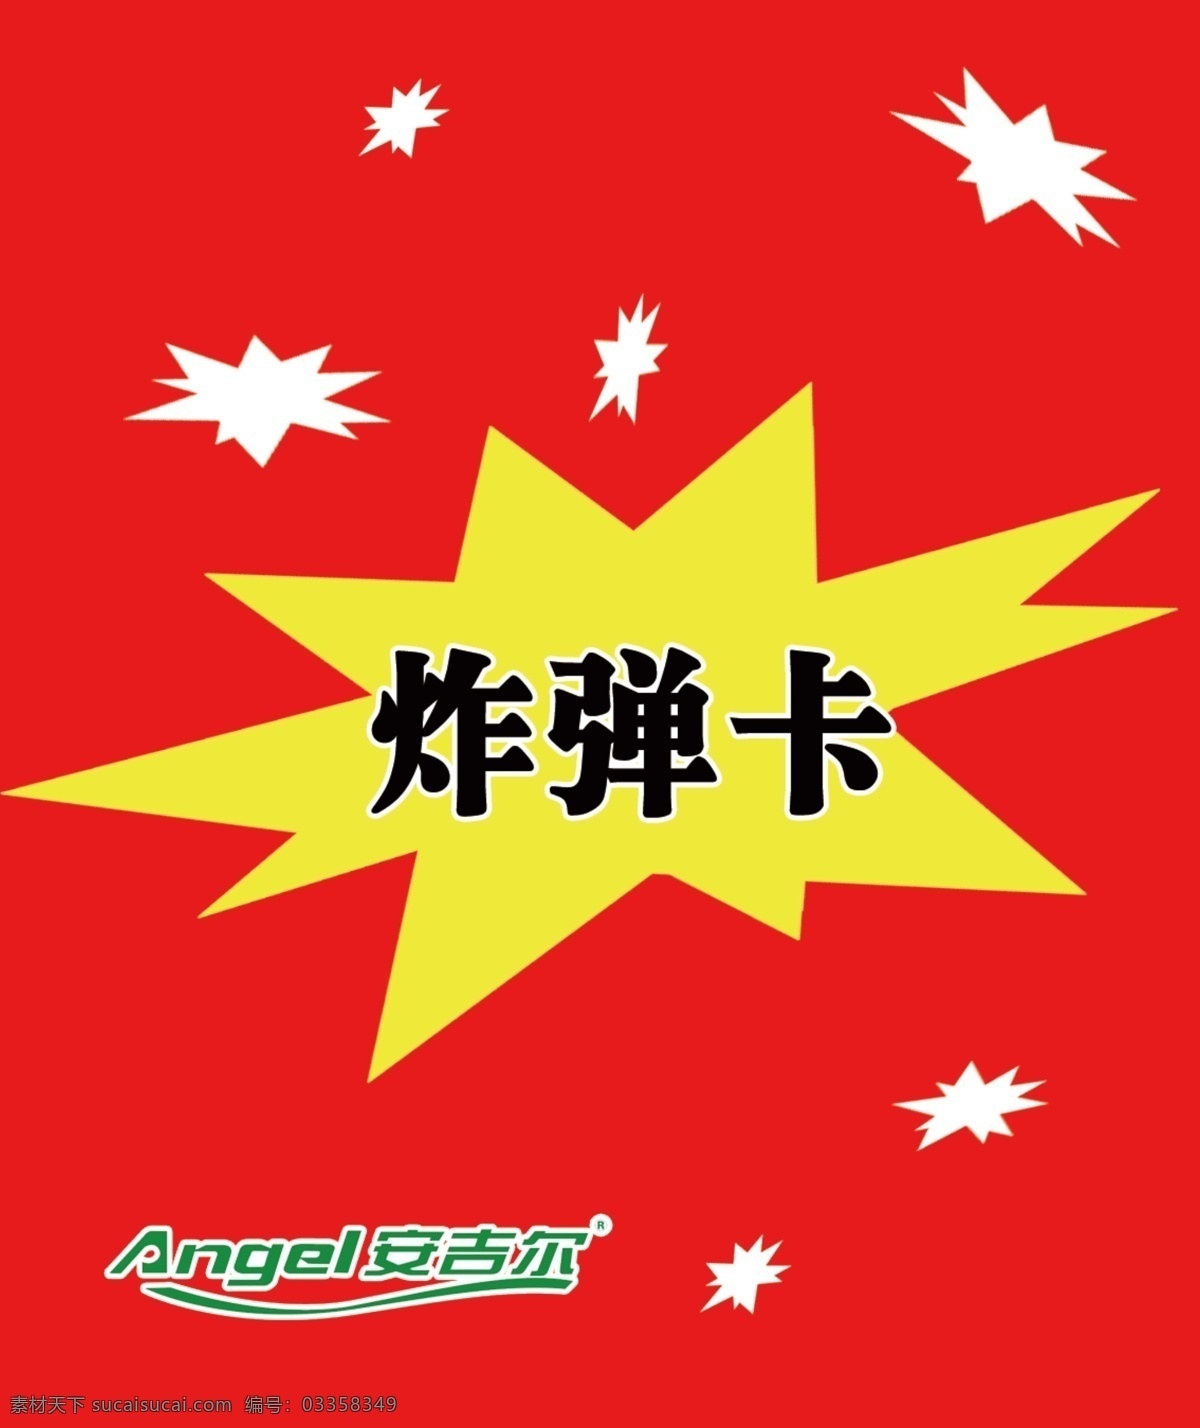 安吉尔炸弹卡 平面设计 炸弹卡 logo 印刷品